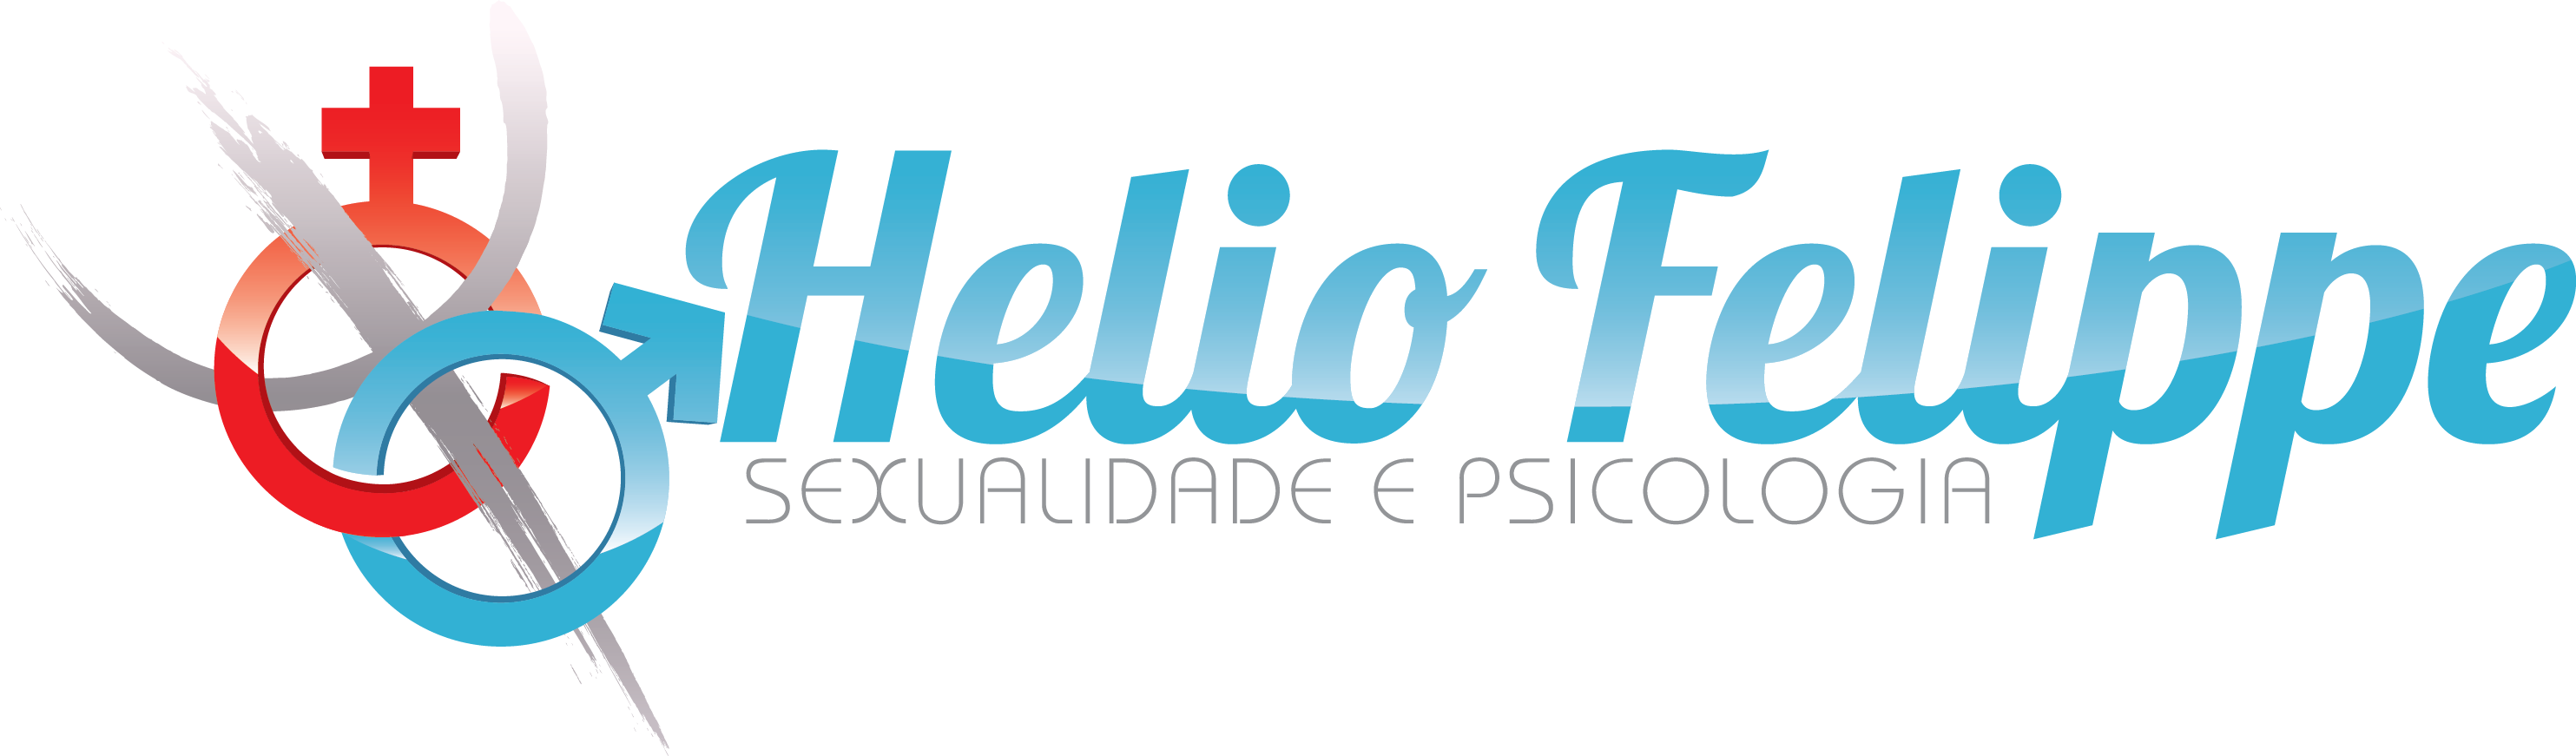 heliofelippe.com.br